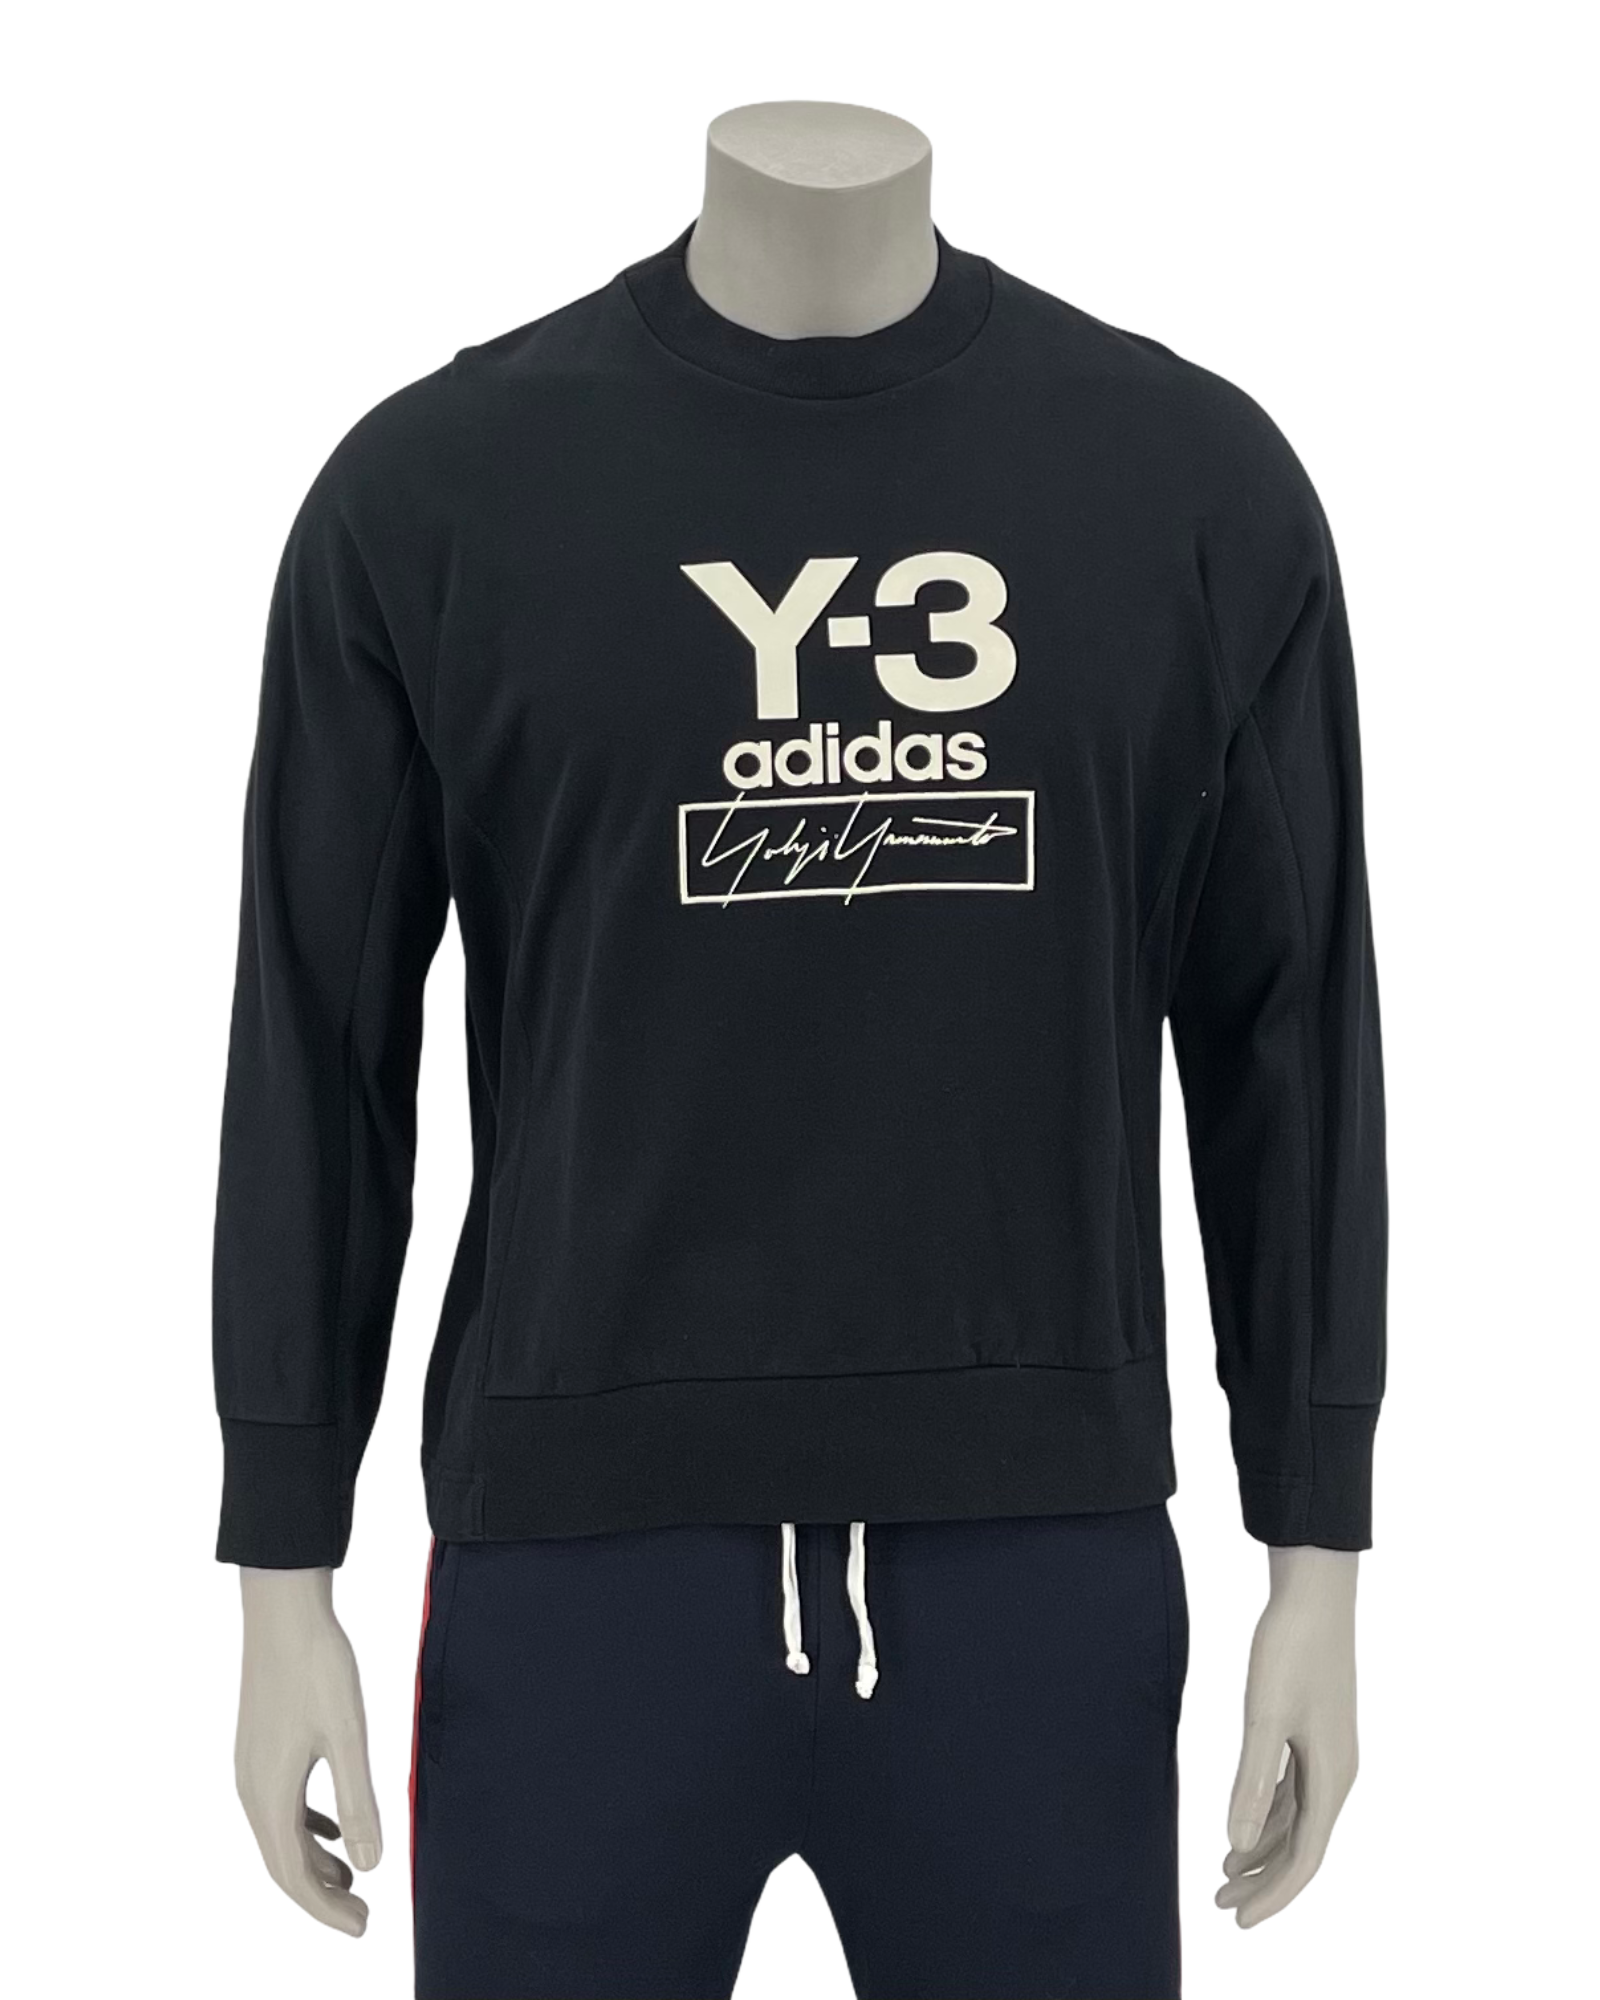 Y-3 adidas Sweater